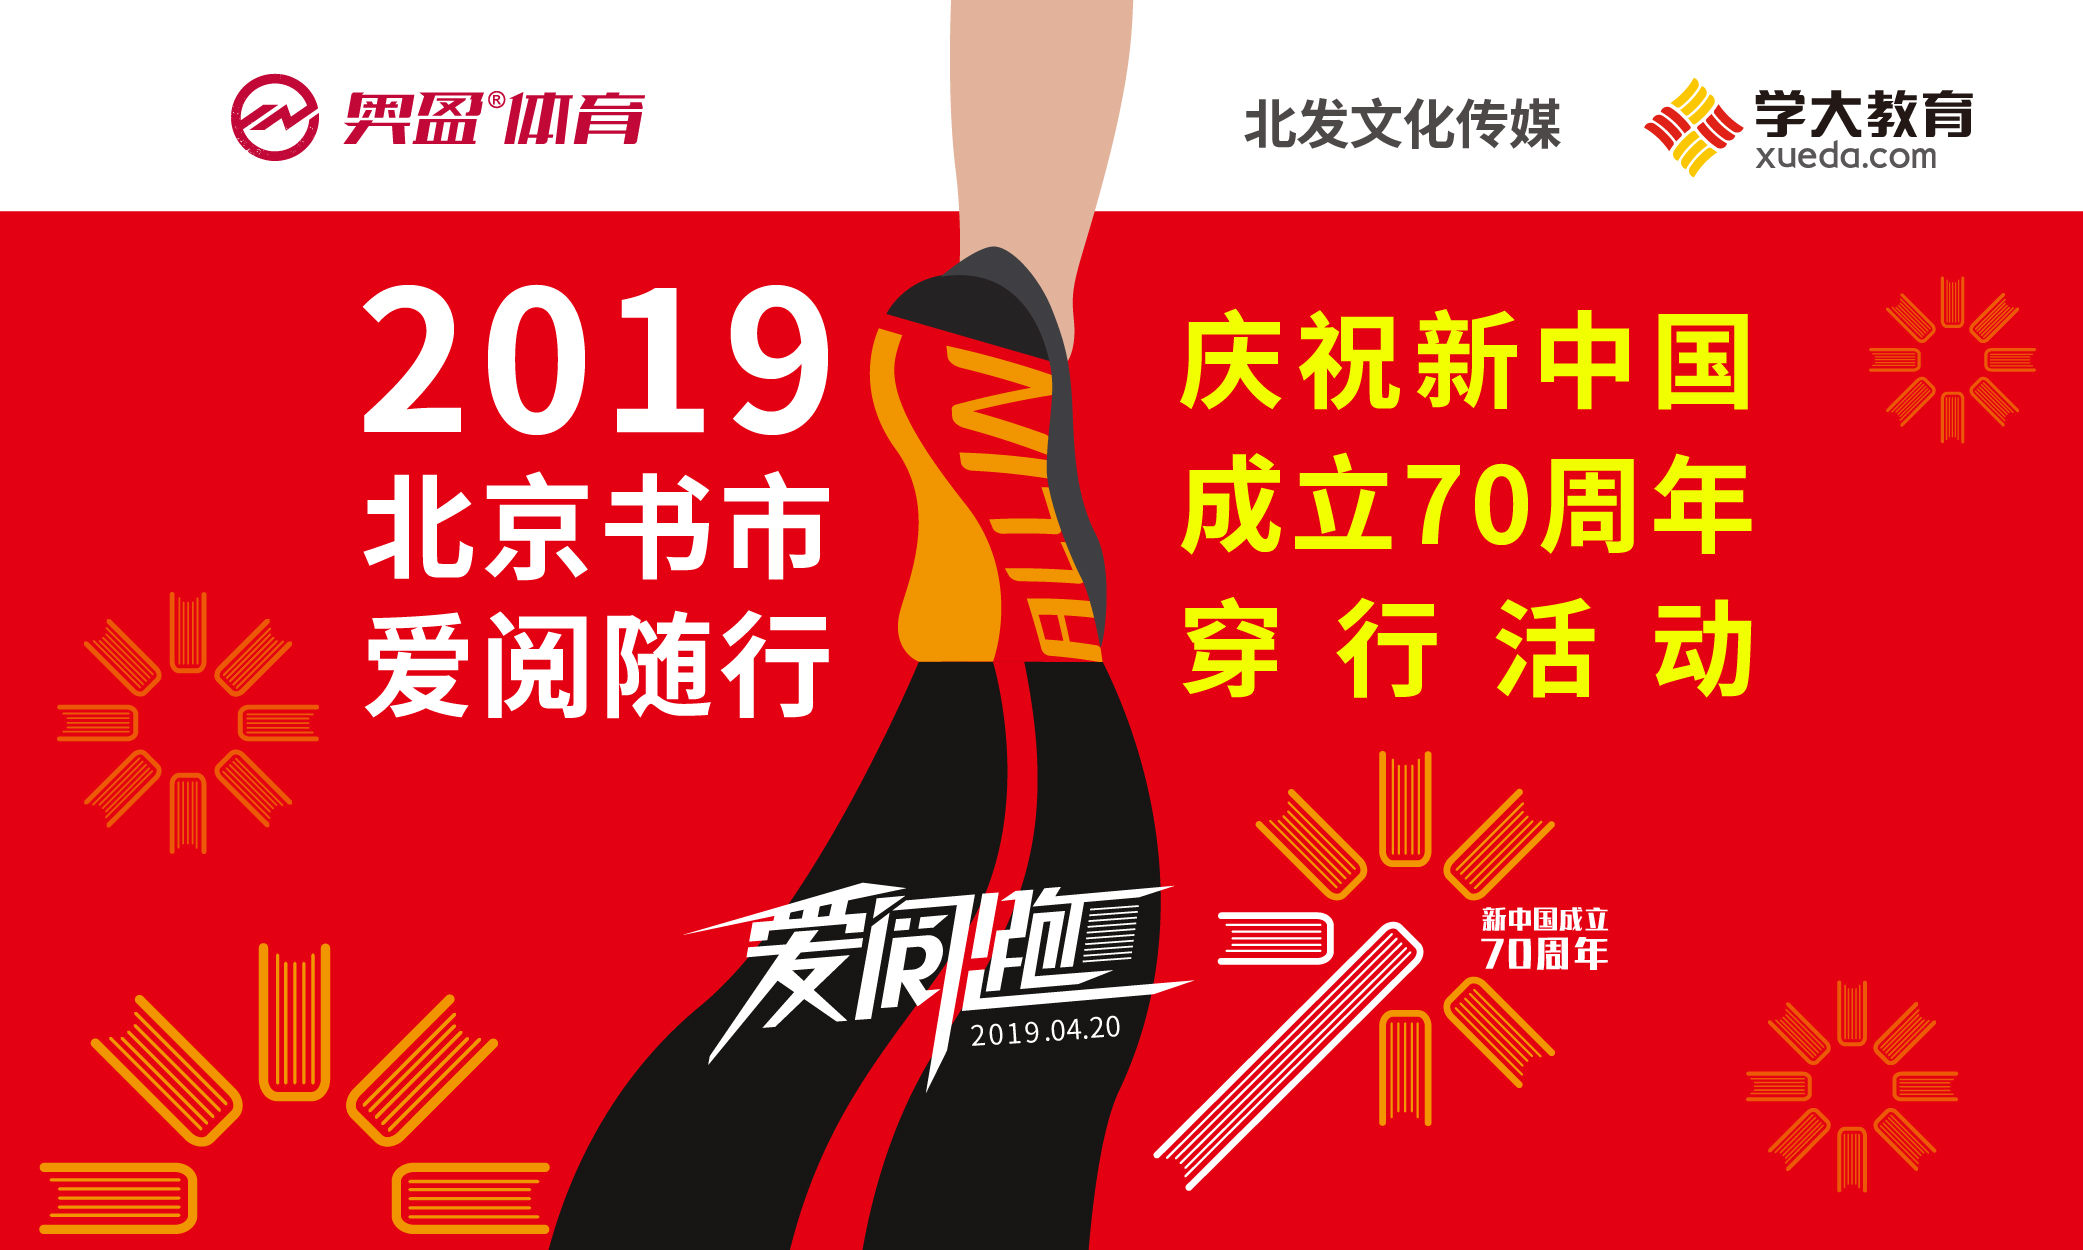 2019北京书市爱阅随行·庆祝建国70周年主题赛事